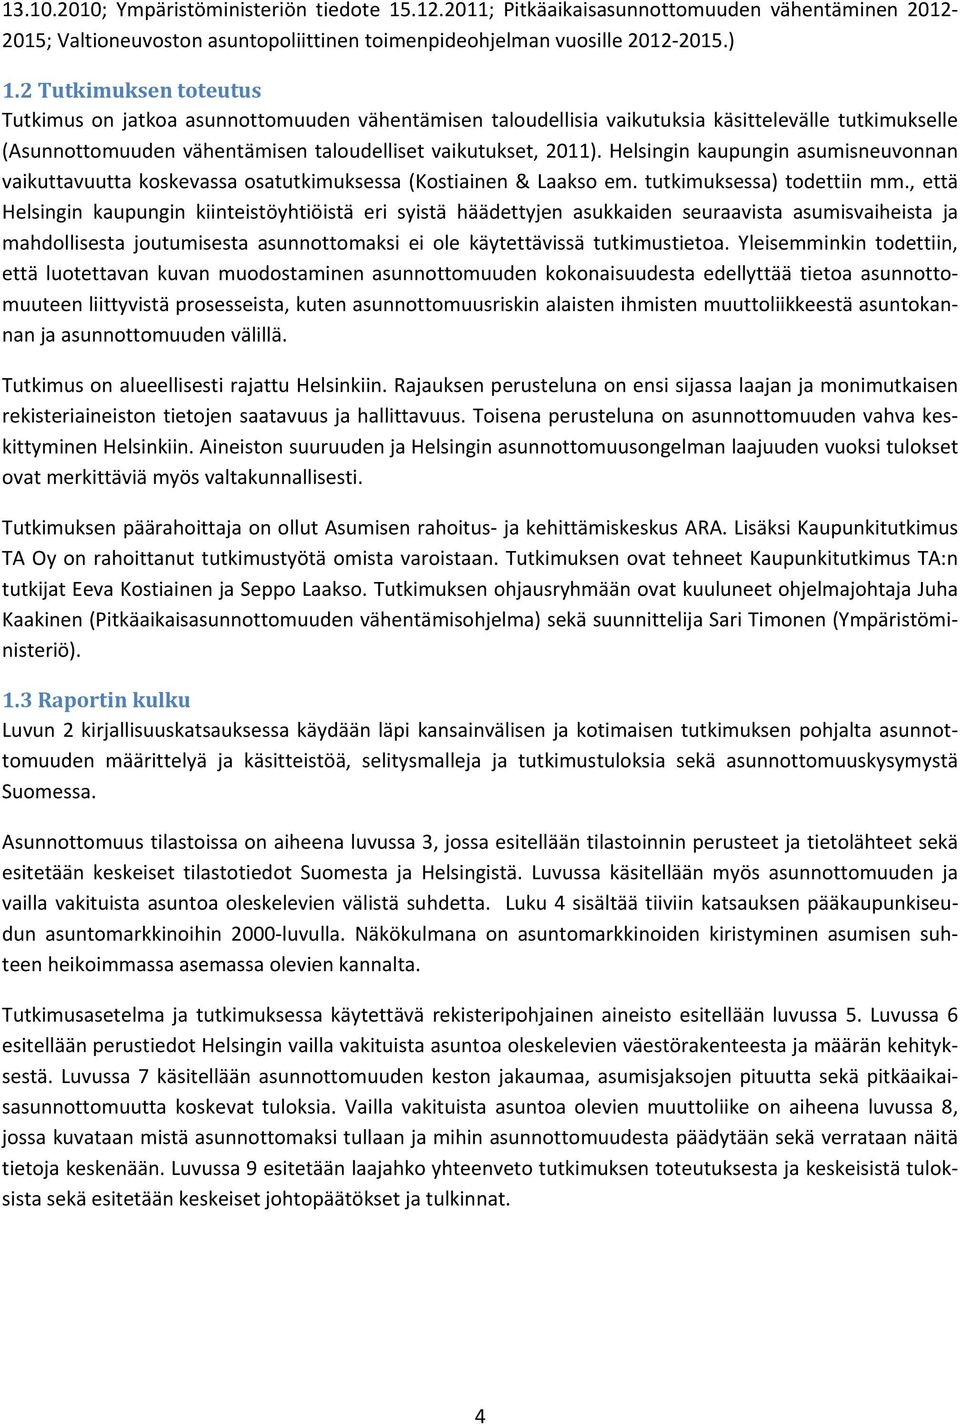 Helsingin kaupungin asumisneuvonnan vaikuttavuutta koskevassa osatutkimuksessa (Kostiainen & Laakso em. tutkimuksessa) todettiin mm.